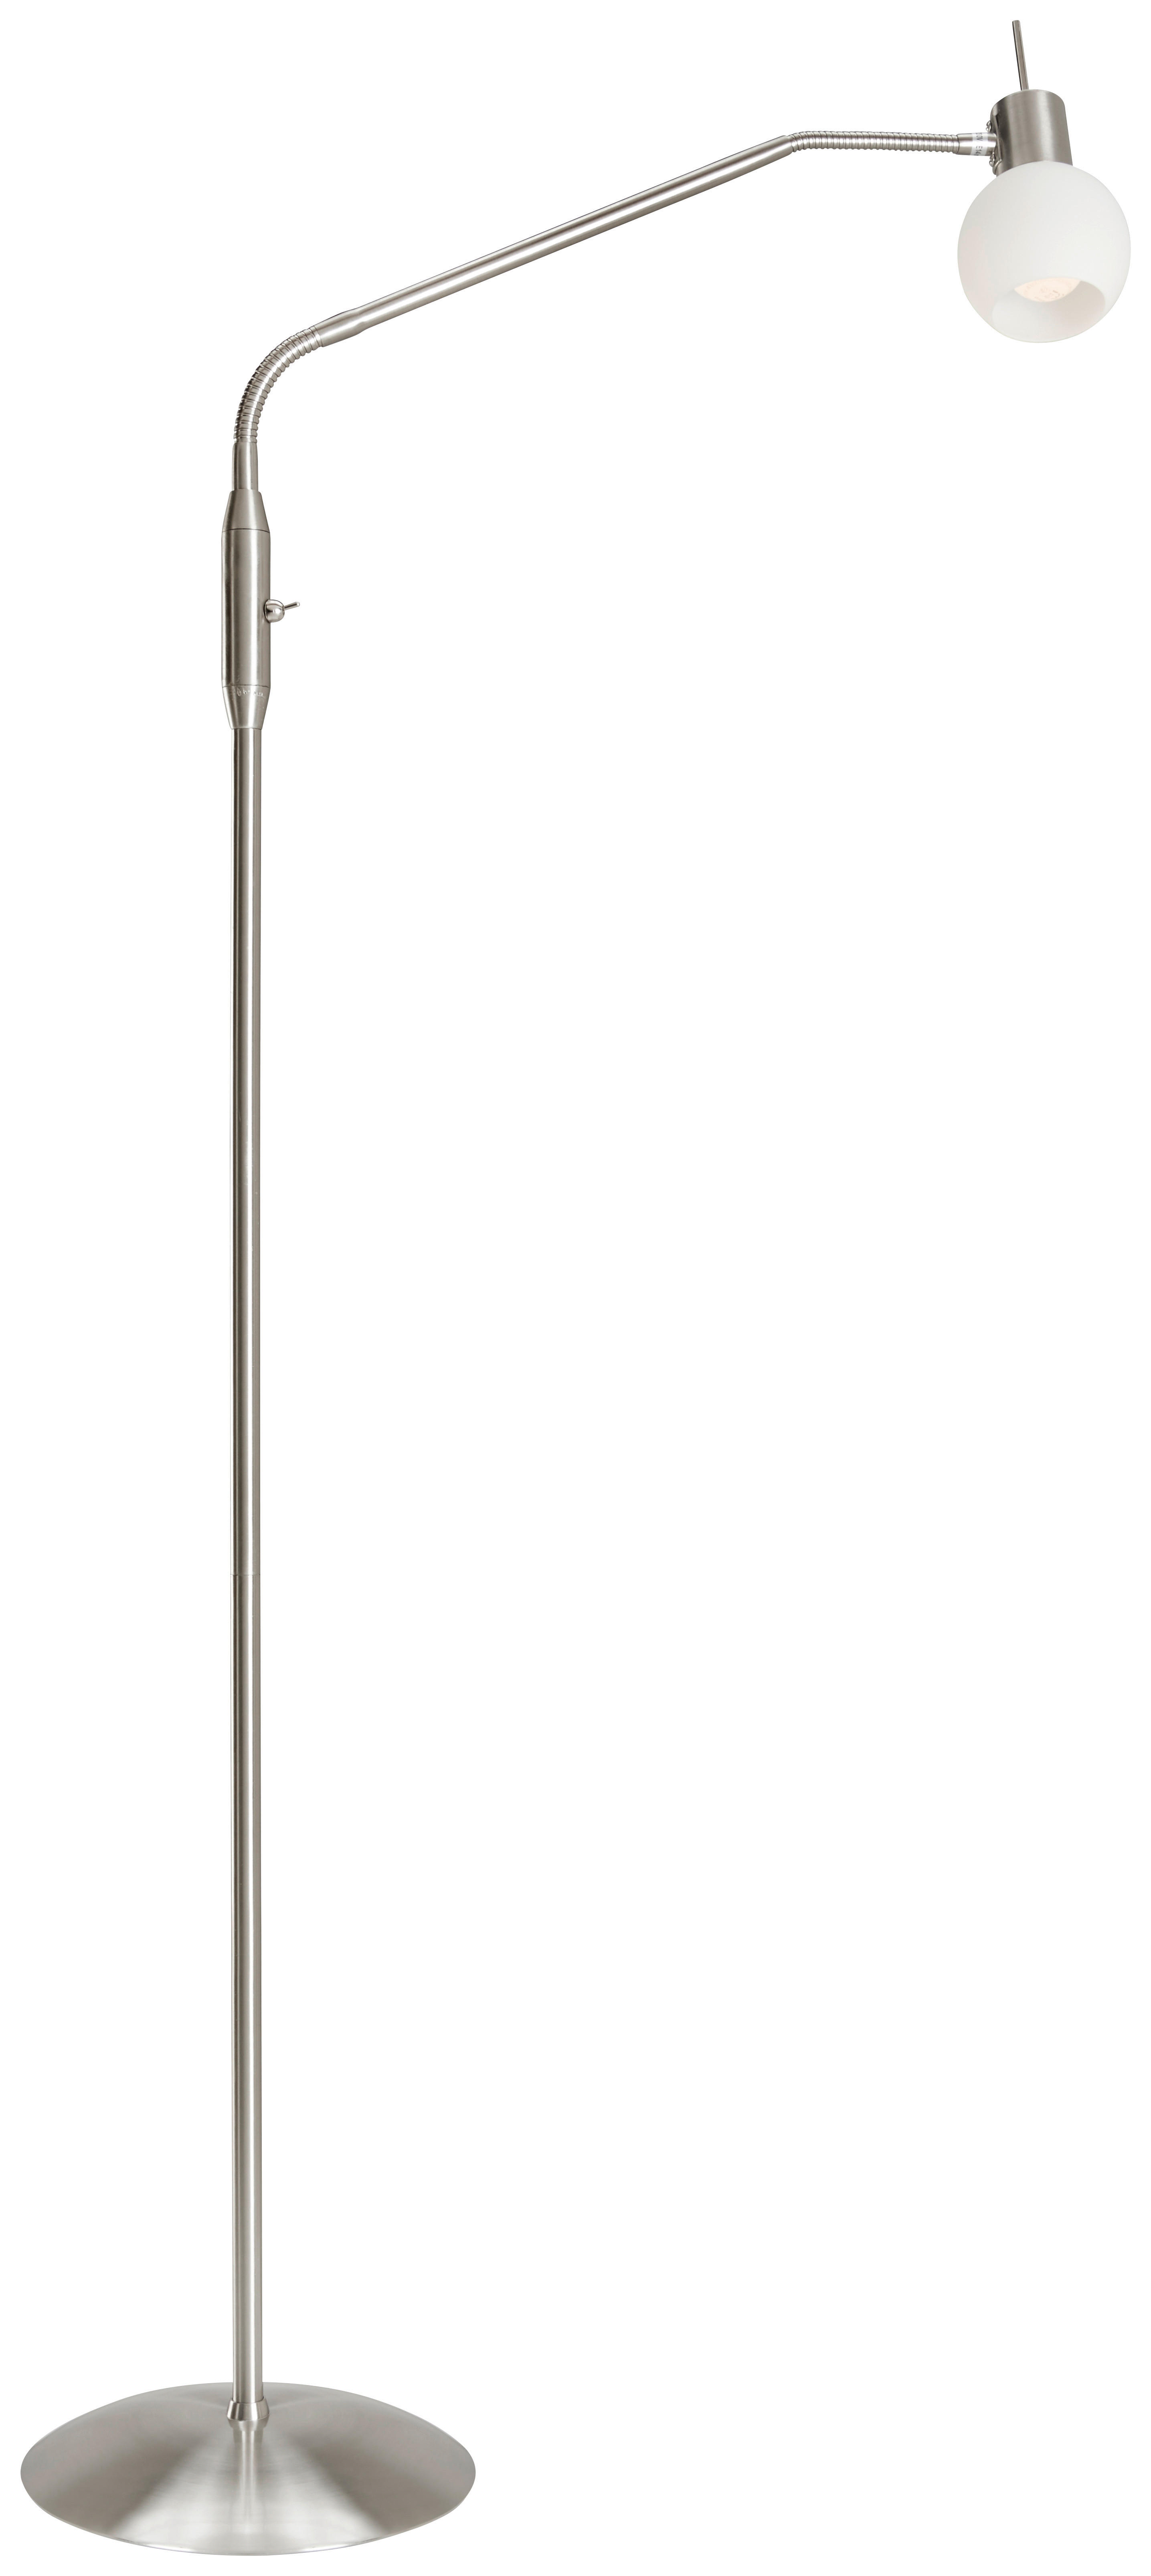 LED STOJACIA LAMPA, 145 cm - biela/niklová, Basics, kov/sklo (145cm) - Novel